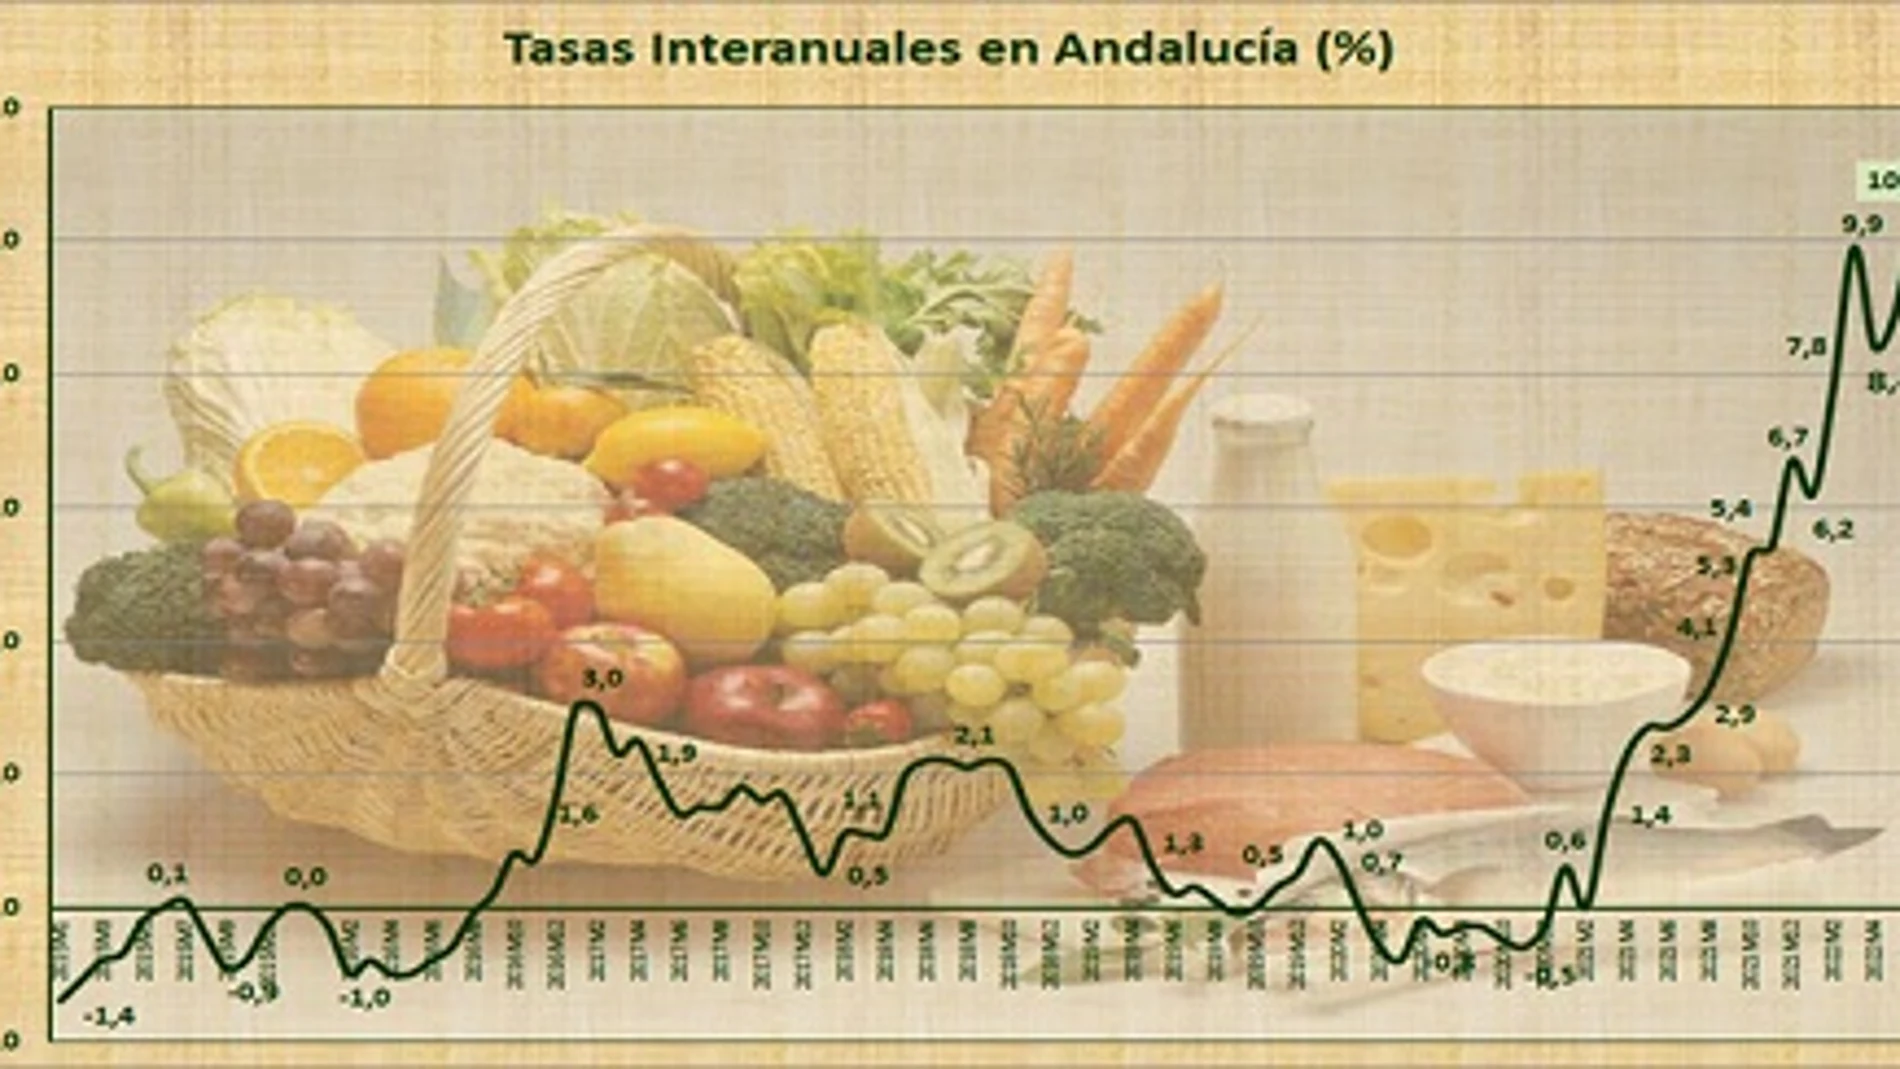 Cuadro con la evolución de la tasa interanual del IPC en Andalucía